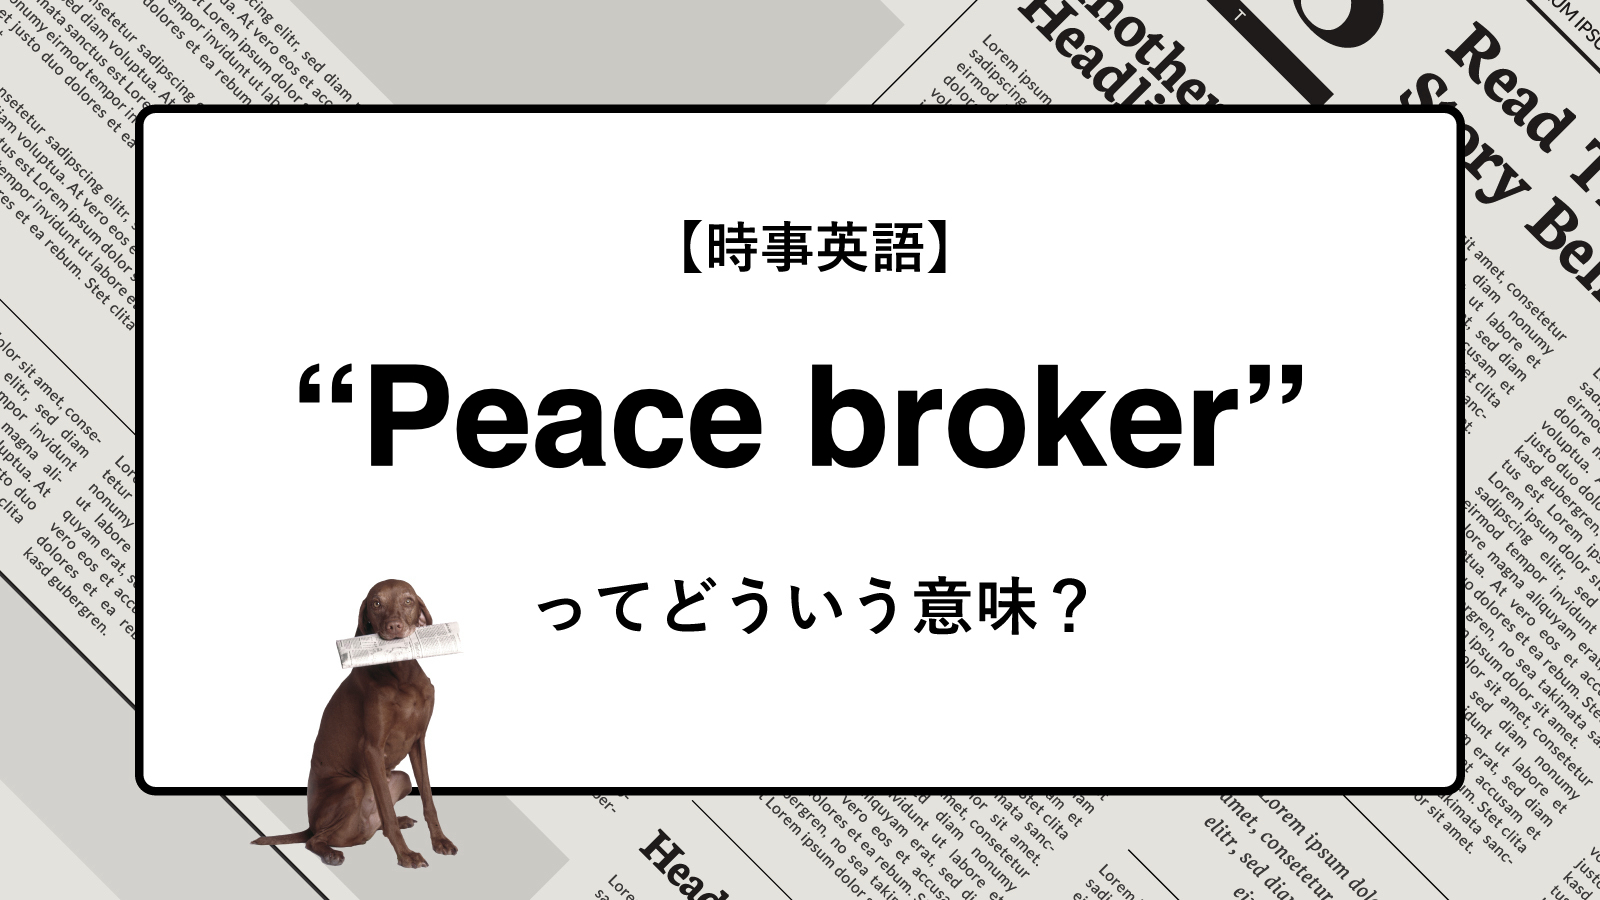 【時事英語】“Peace broker” ってどういう意味？ | ニュースの「キーワード」で語彙力を身につける